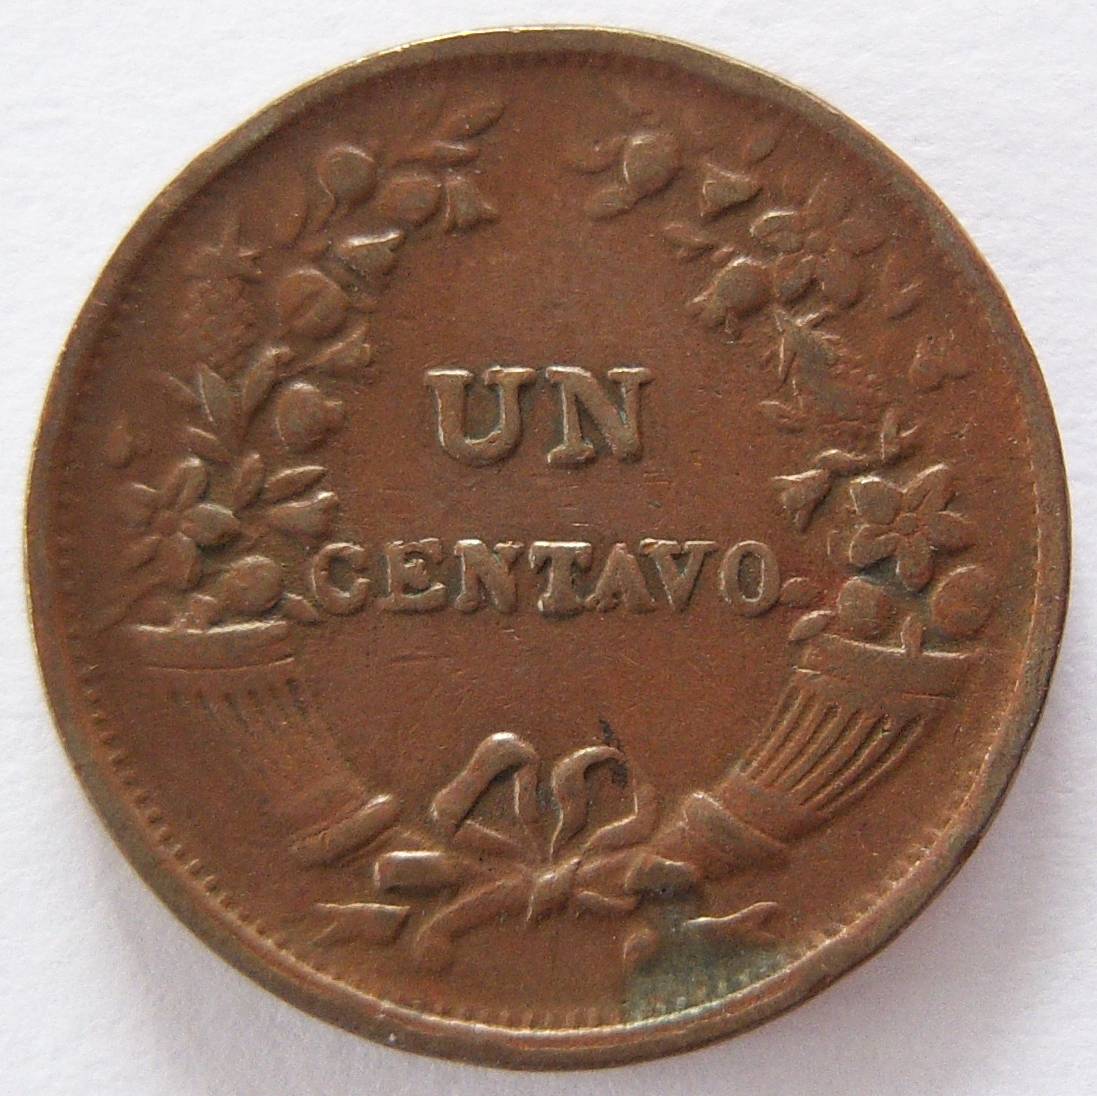  Peru Un 1 Centavo 1937   